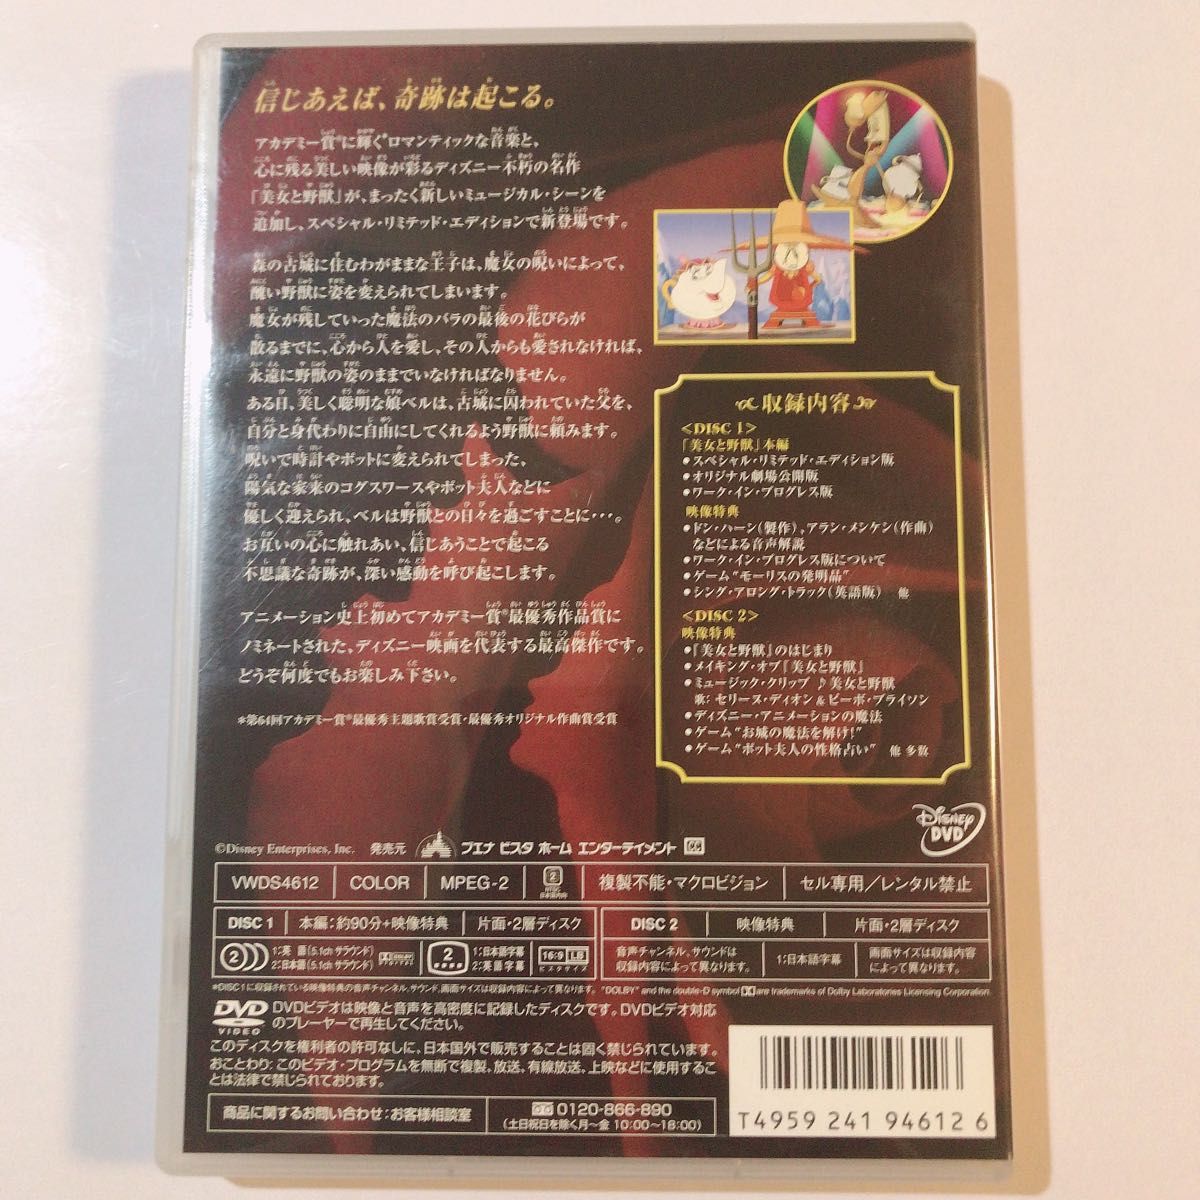 美女と野獣 スペシャル・リミテッド・エディション 2枚組DVD